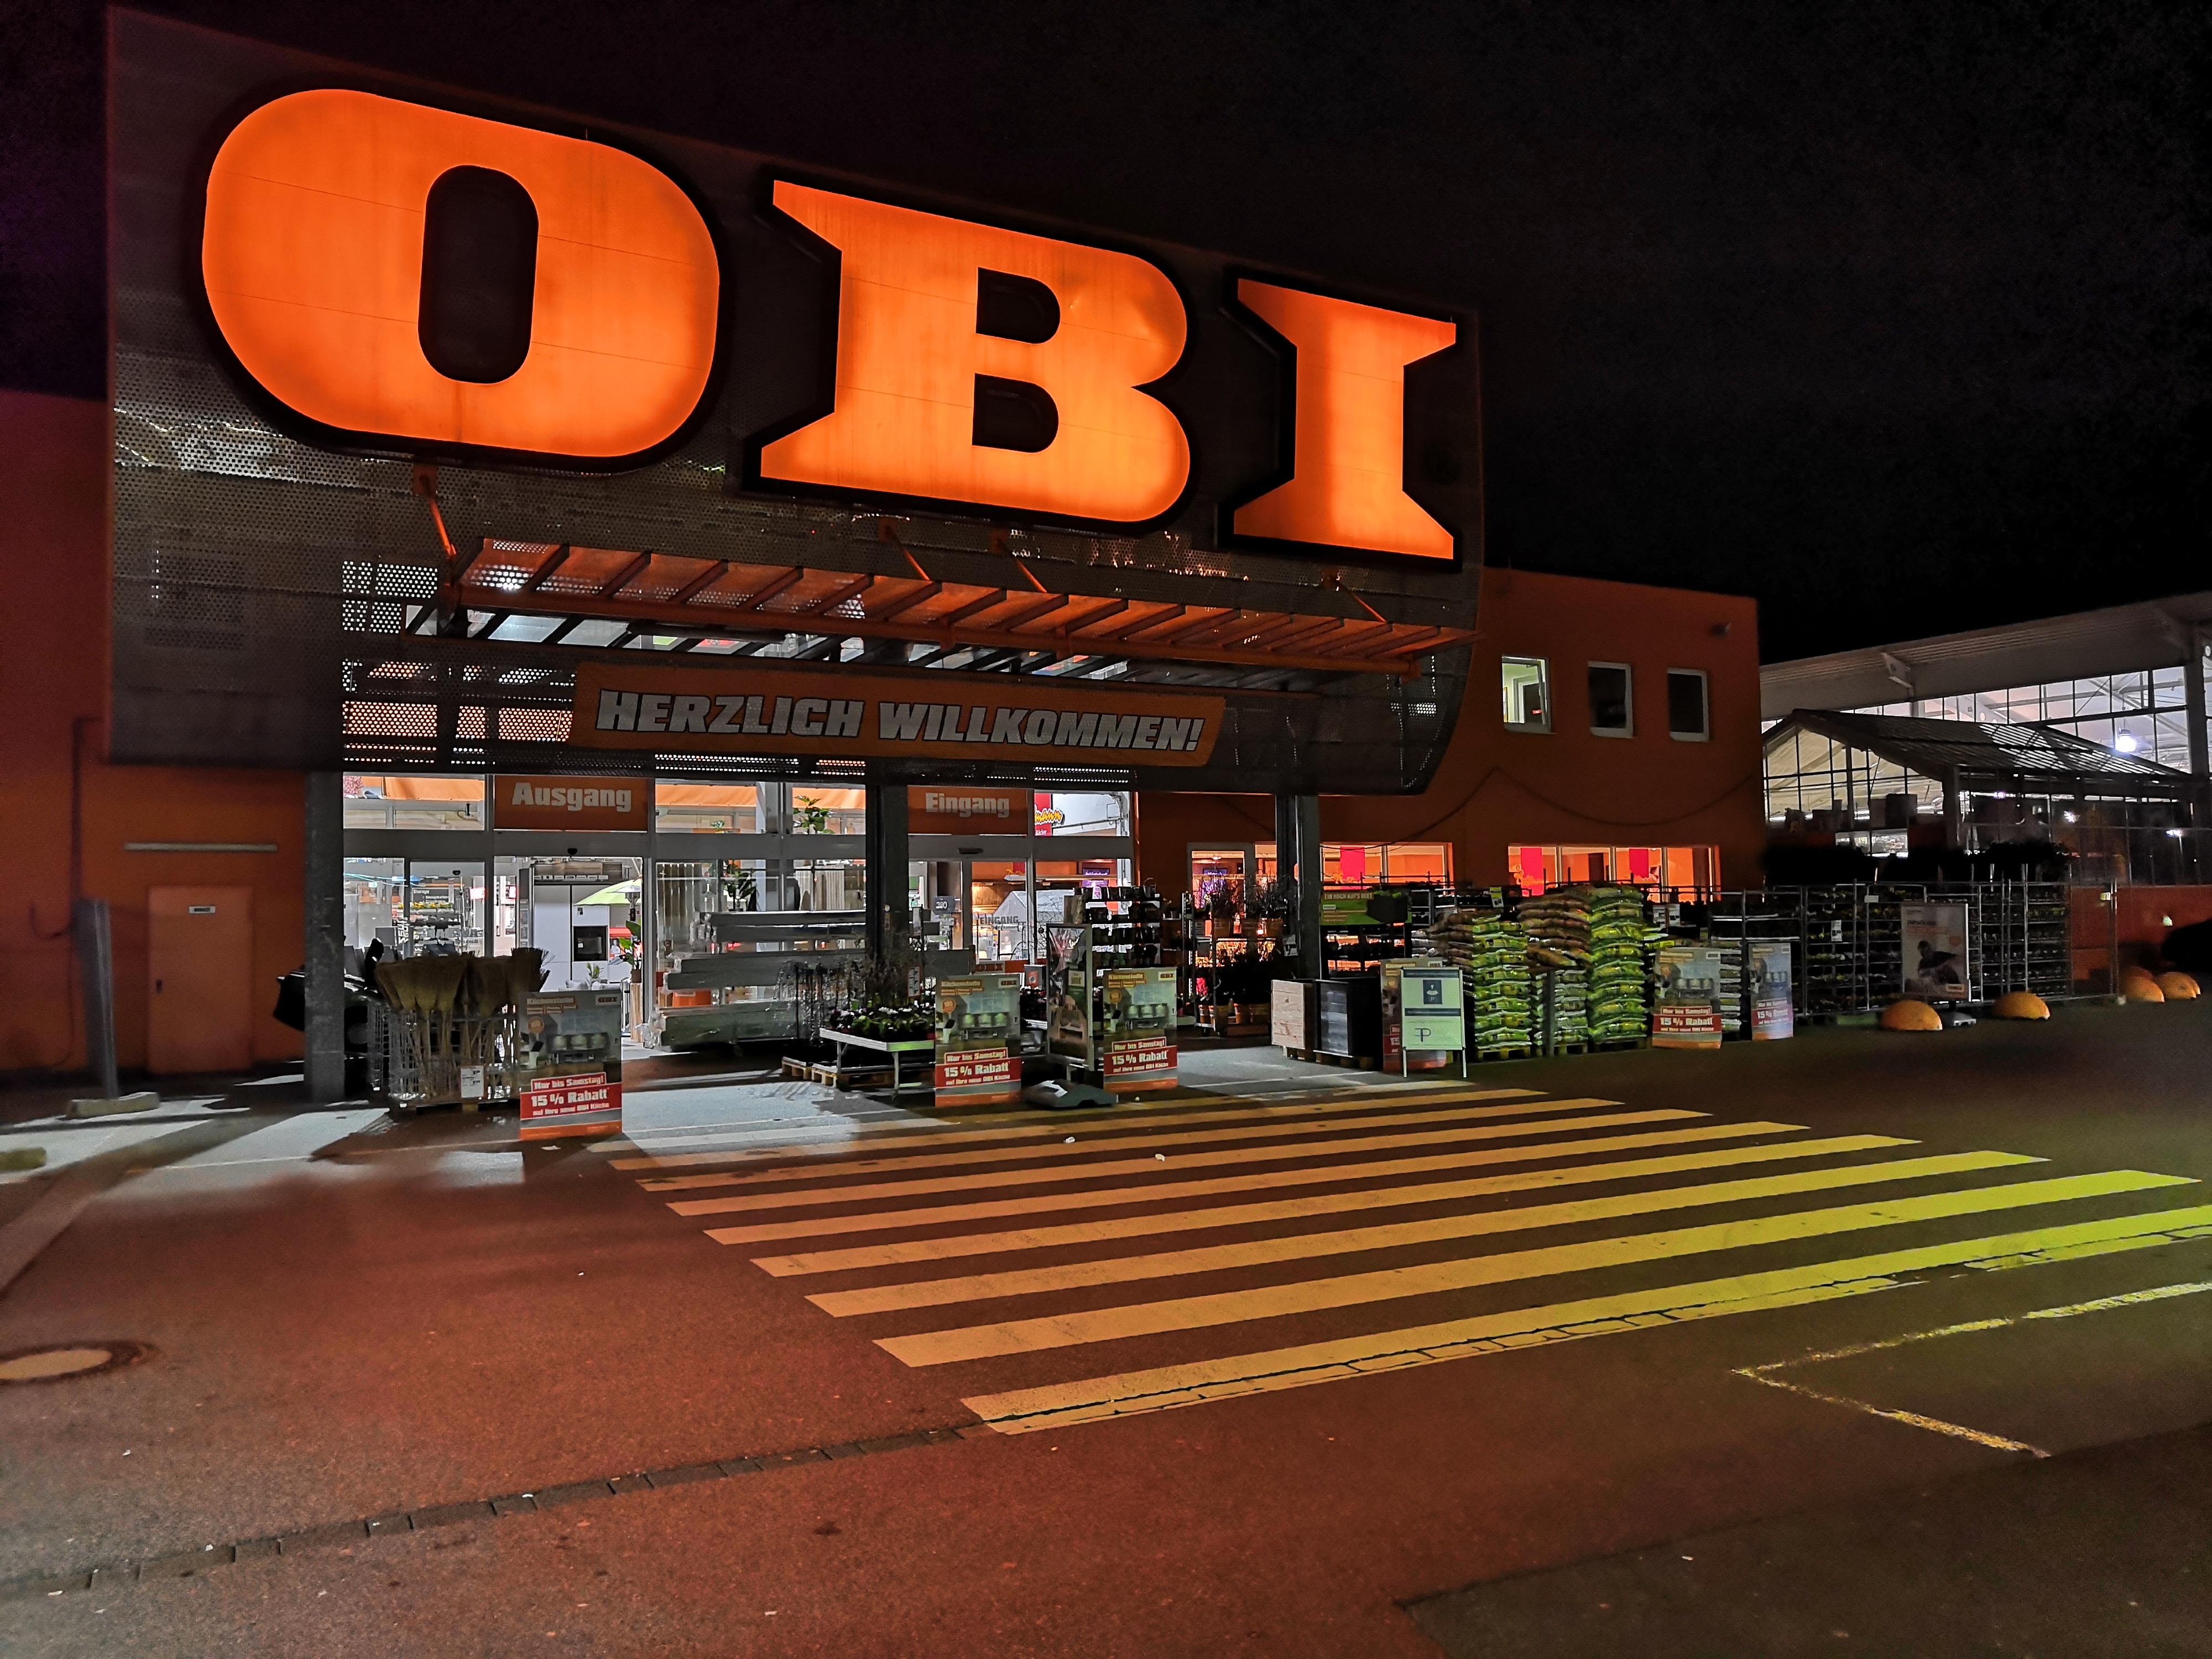 OBI-Wuppertal